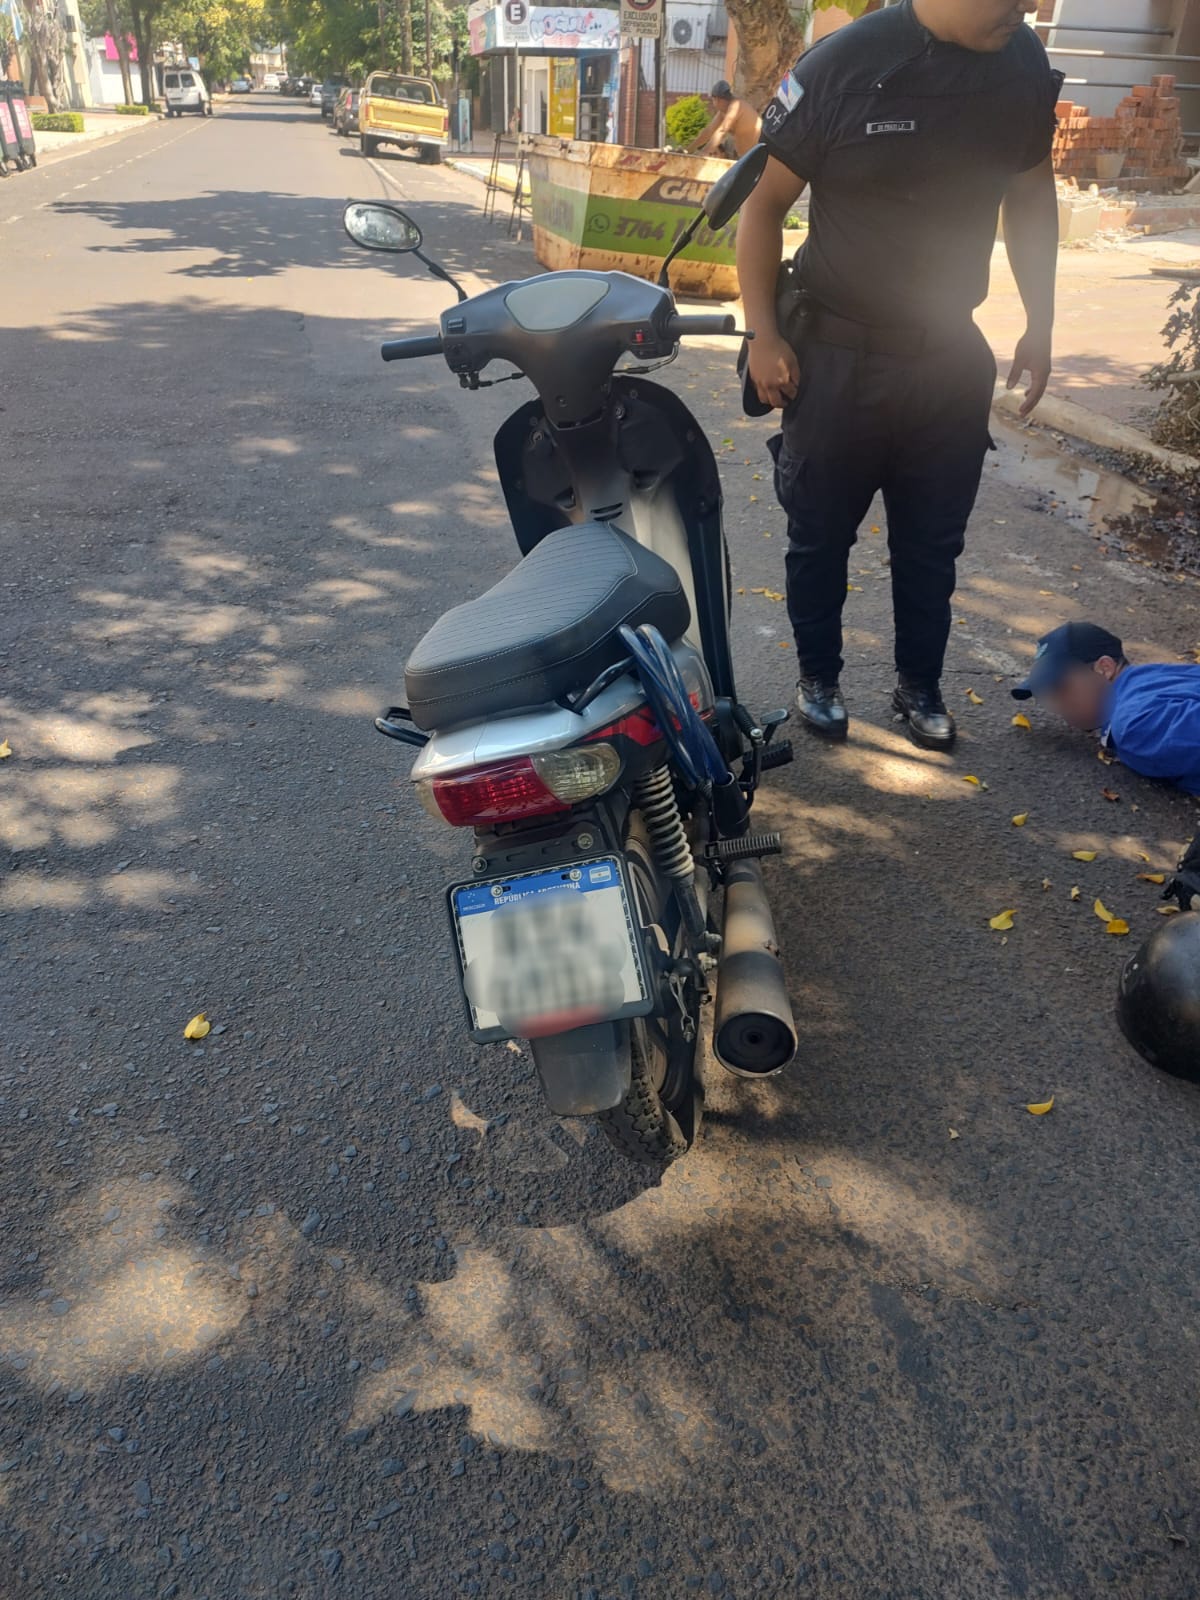 Un hombre intentó robar una moto y fue detenido frente a la Jefatura imagen-20